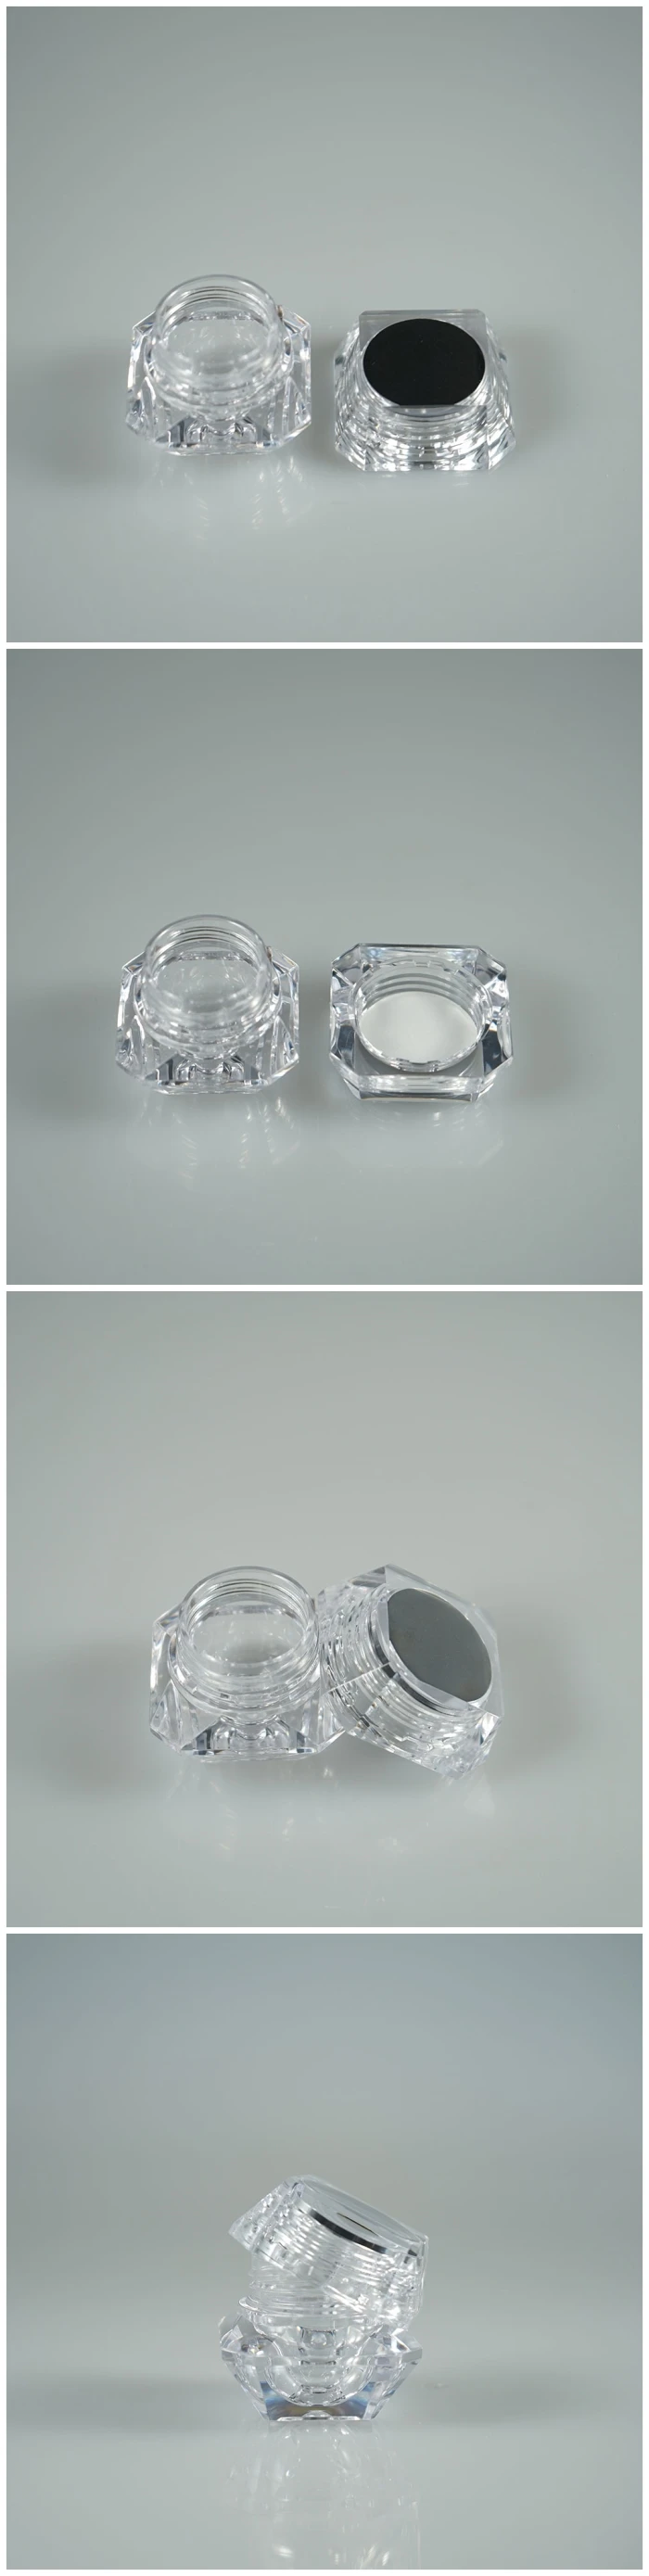 透明ダイヤモンド3gプラスチックミニ化粧品包装 ブラッシュジャー ネイルジェルコンテナ Buy ネイルジェル容器 ダイヤモンド赤面瓶 ミニ化粧品包装 Product On Alibaba Com